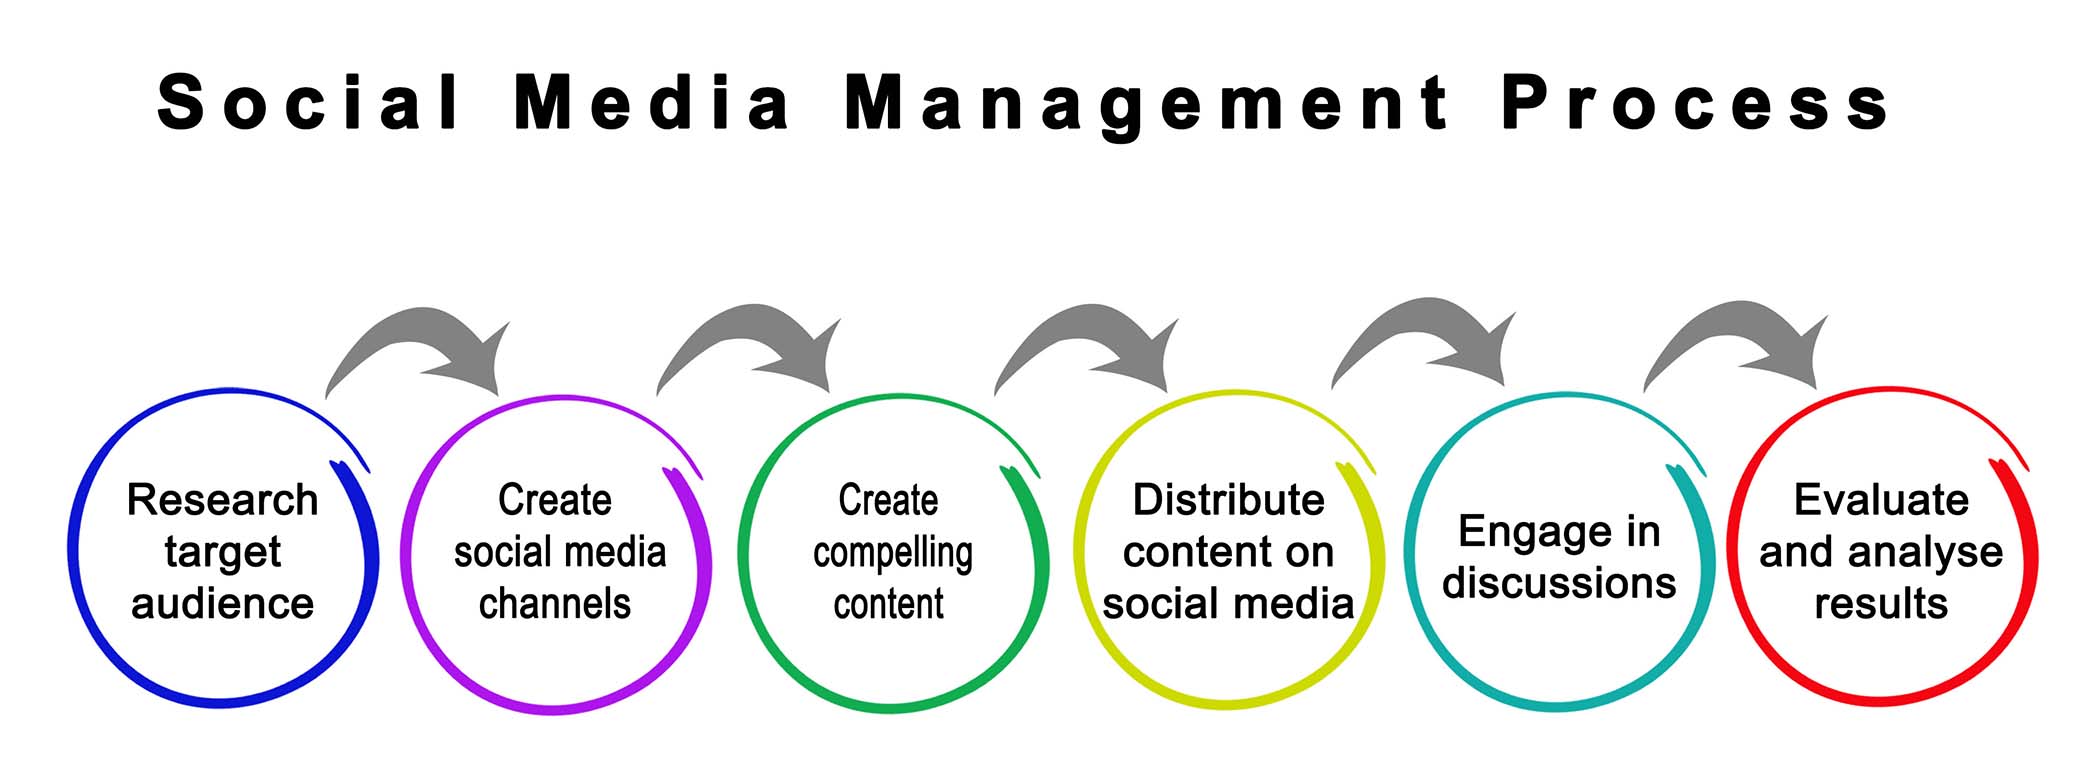 social media management process